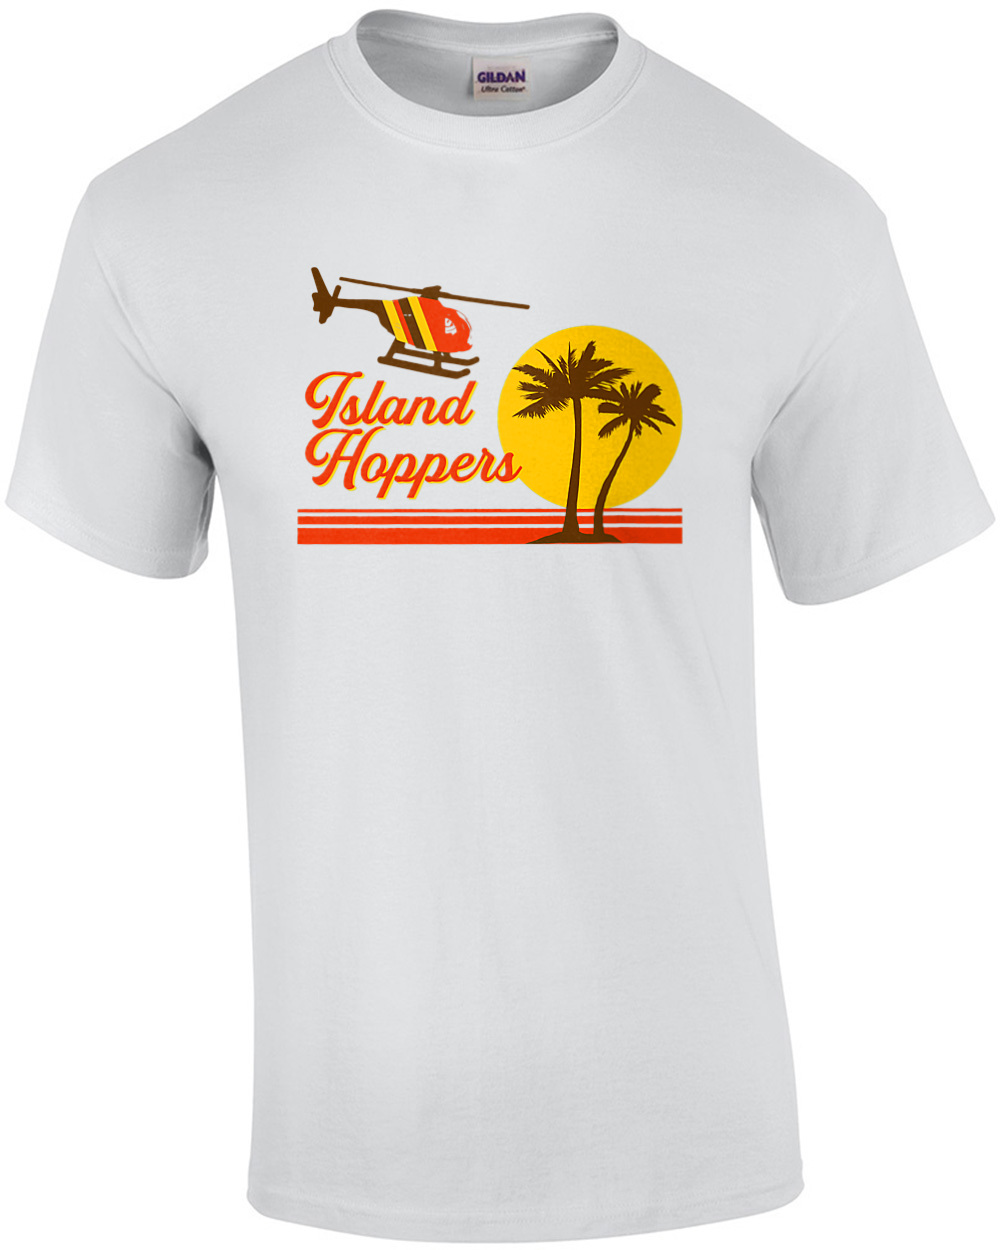 Island Hoppers - Magnum Pi 80's T-shirt | eBay